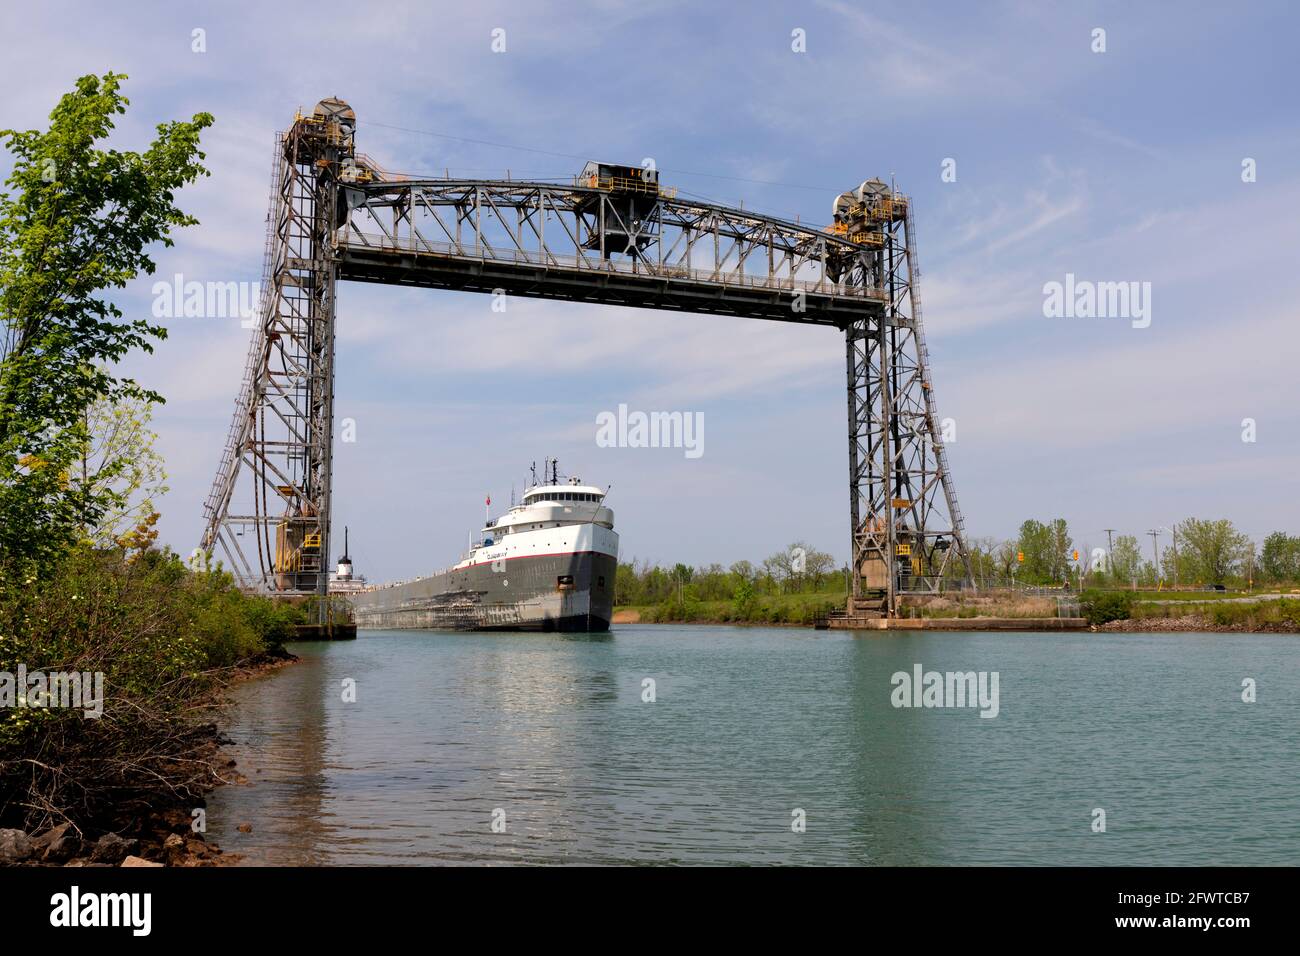 Le navire de transport Ojibway passant sous le pont 5, également connu sous le nom de pont Glendale, un pont élévateur vertical le canal Welland à St. Catharines, à Ontari Banque D'Images